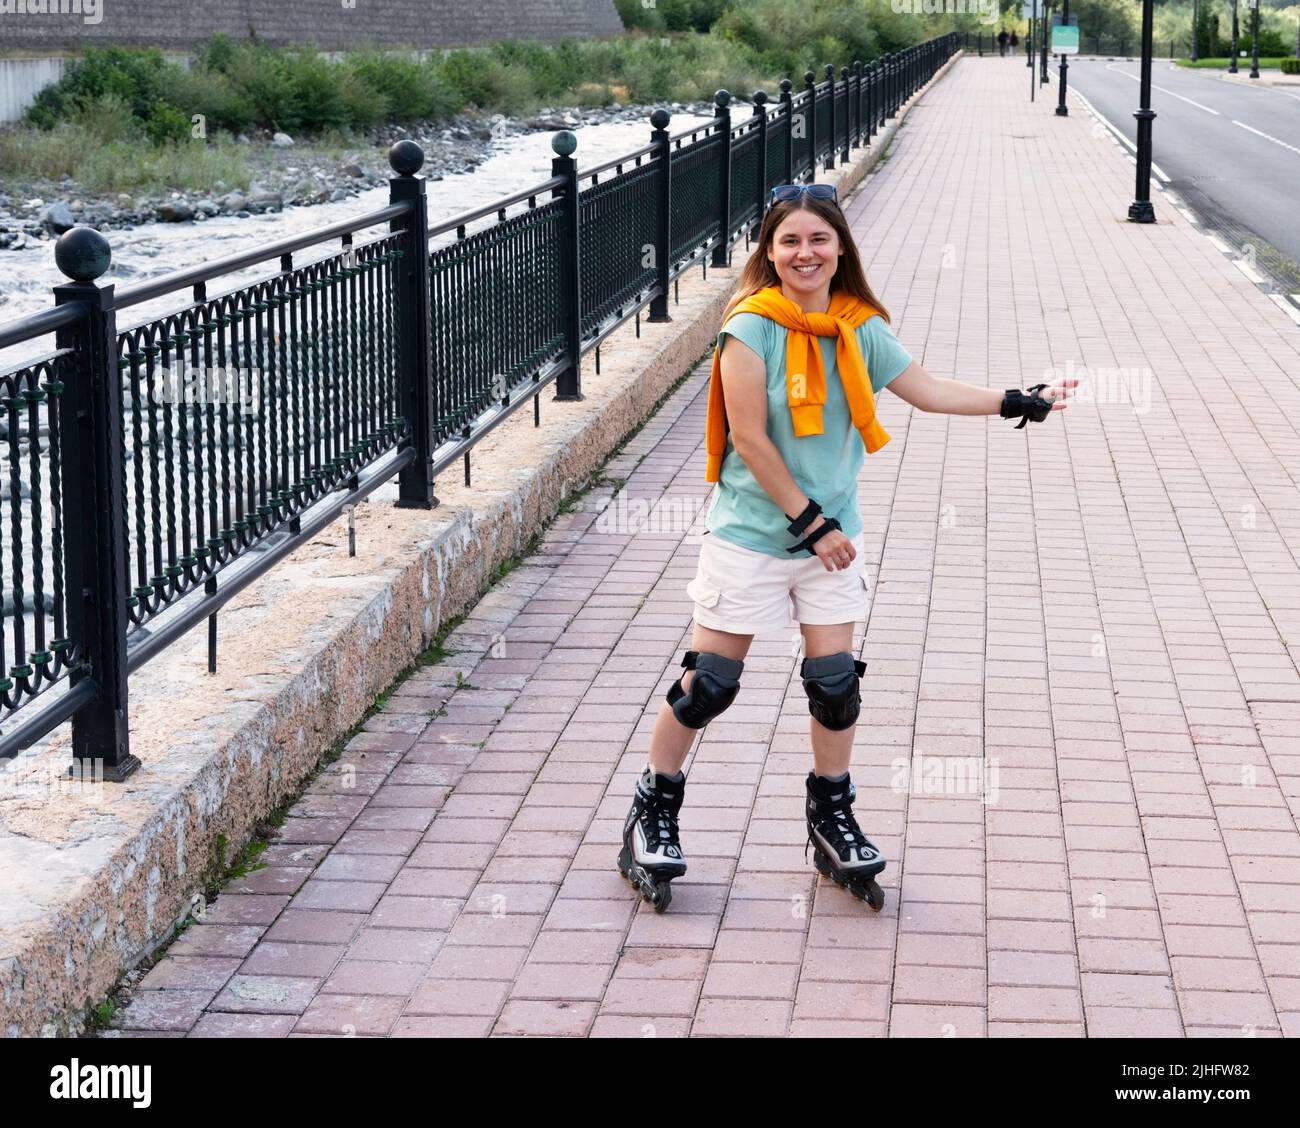 Glückliche schöne junge Frau in Schutzausrüstung Reiten auf Rollschuhe entlang Böschung im Sommer Outdoor-Aktivitäten, Rollschuhlaufen Stockfoto